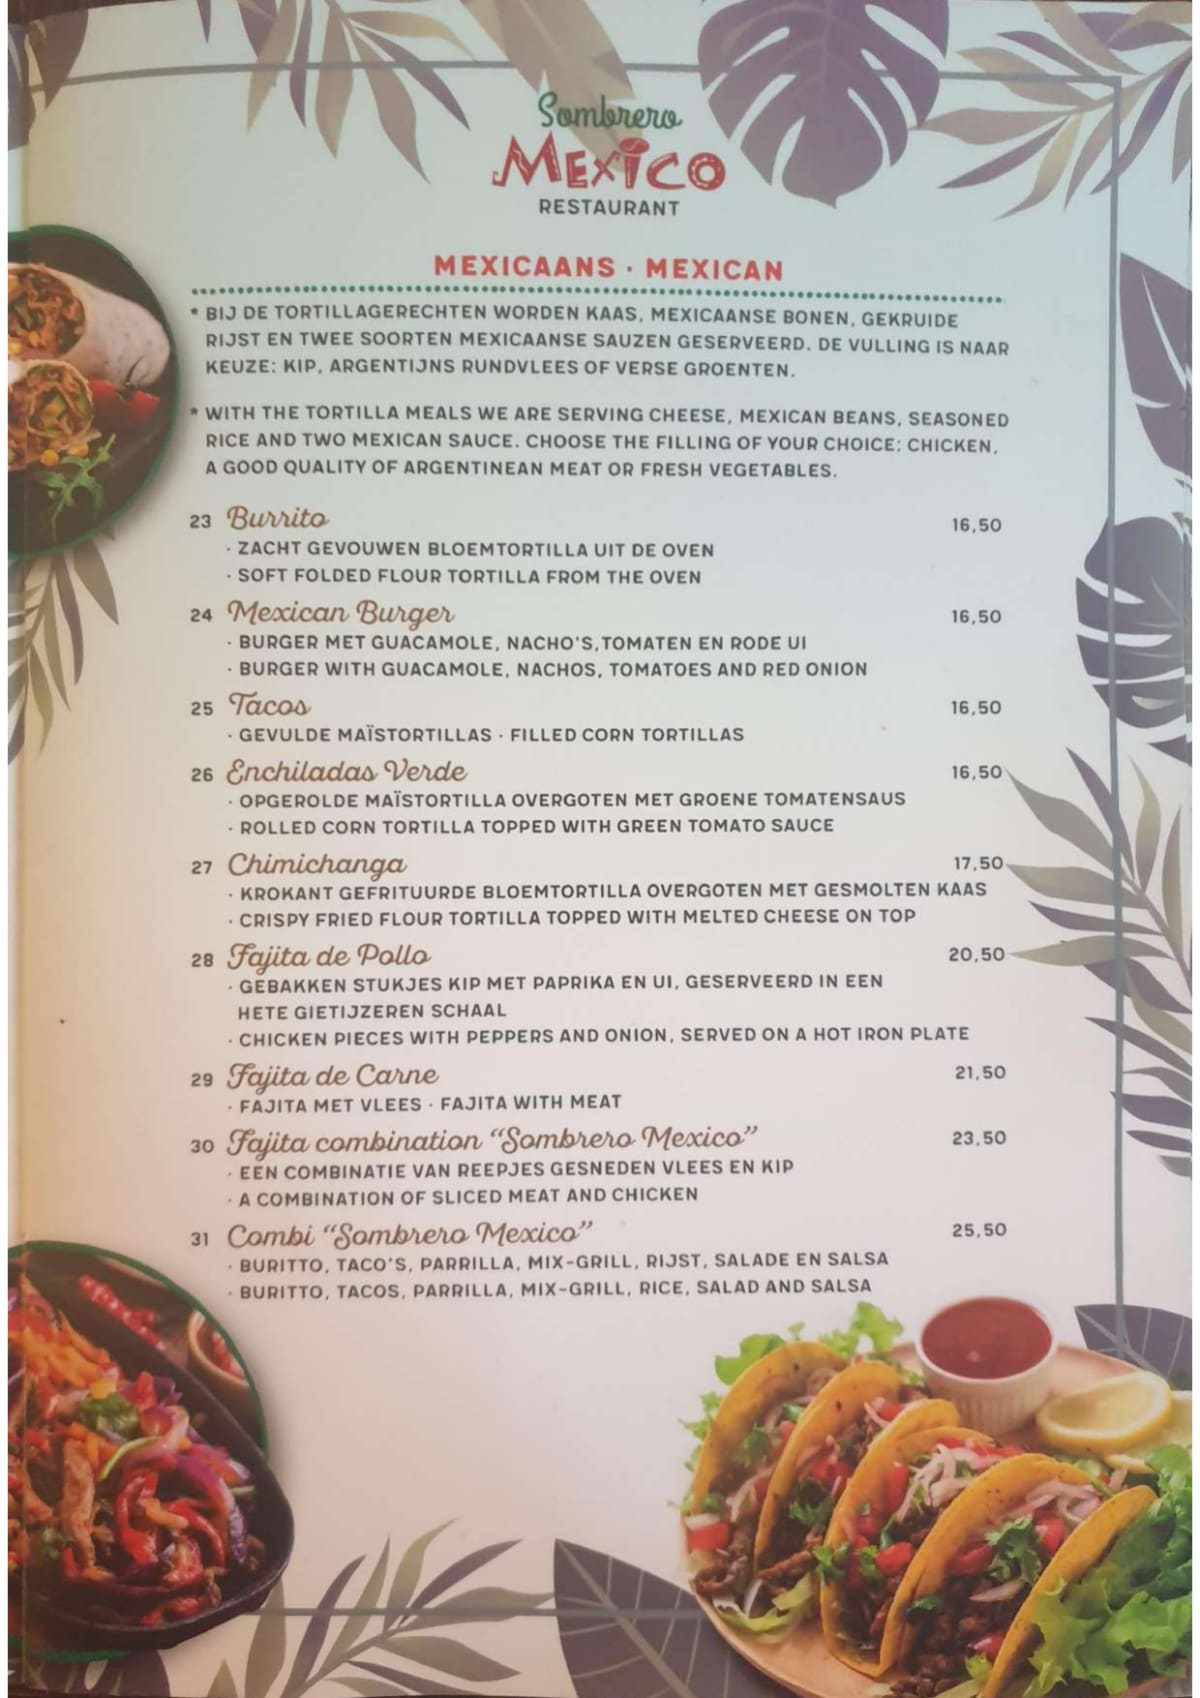 Sombrero Mexico menu